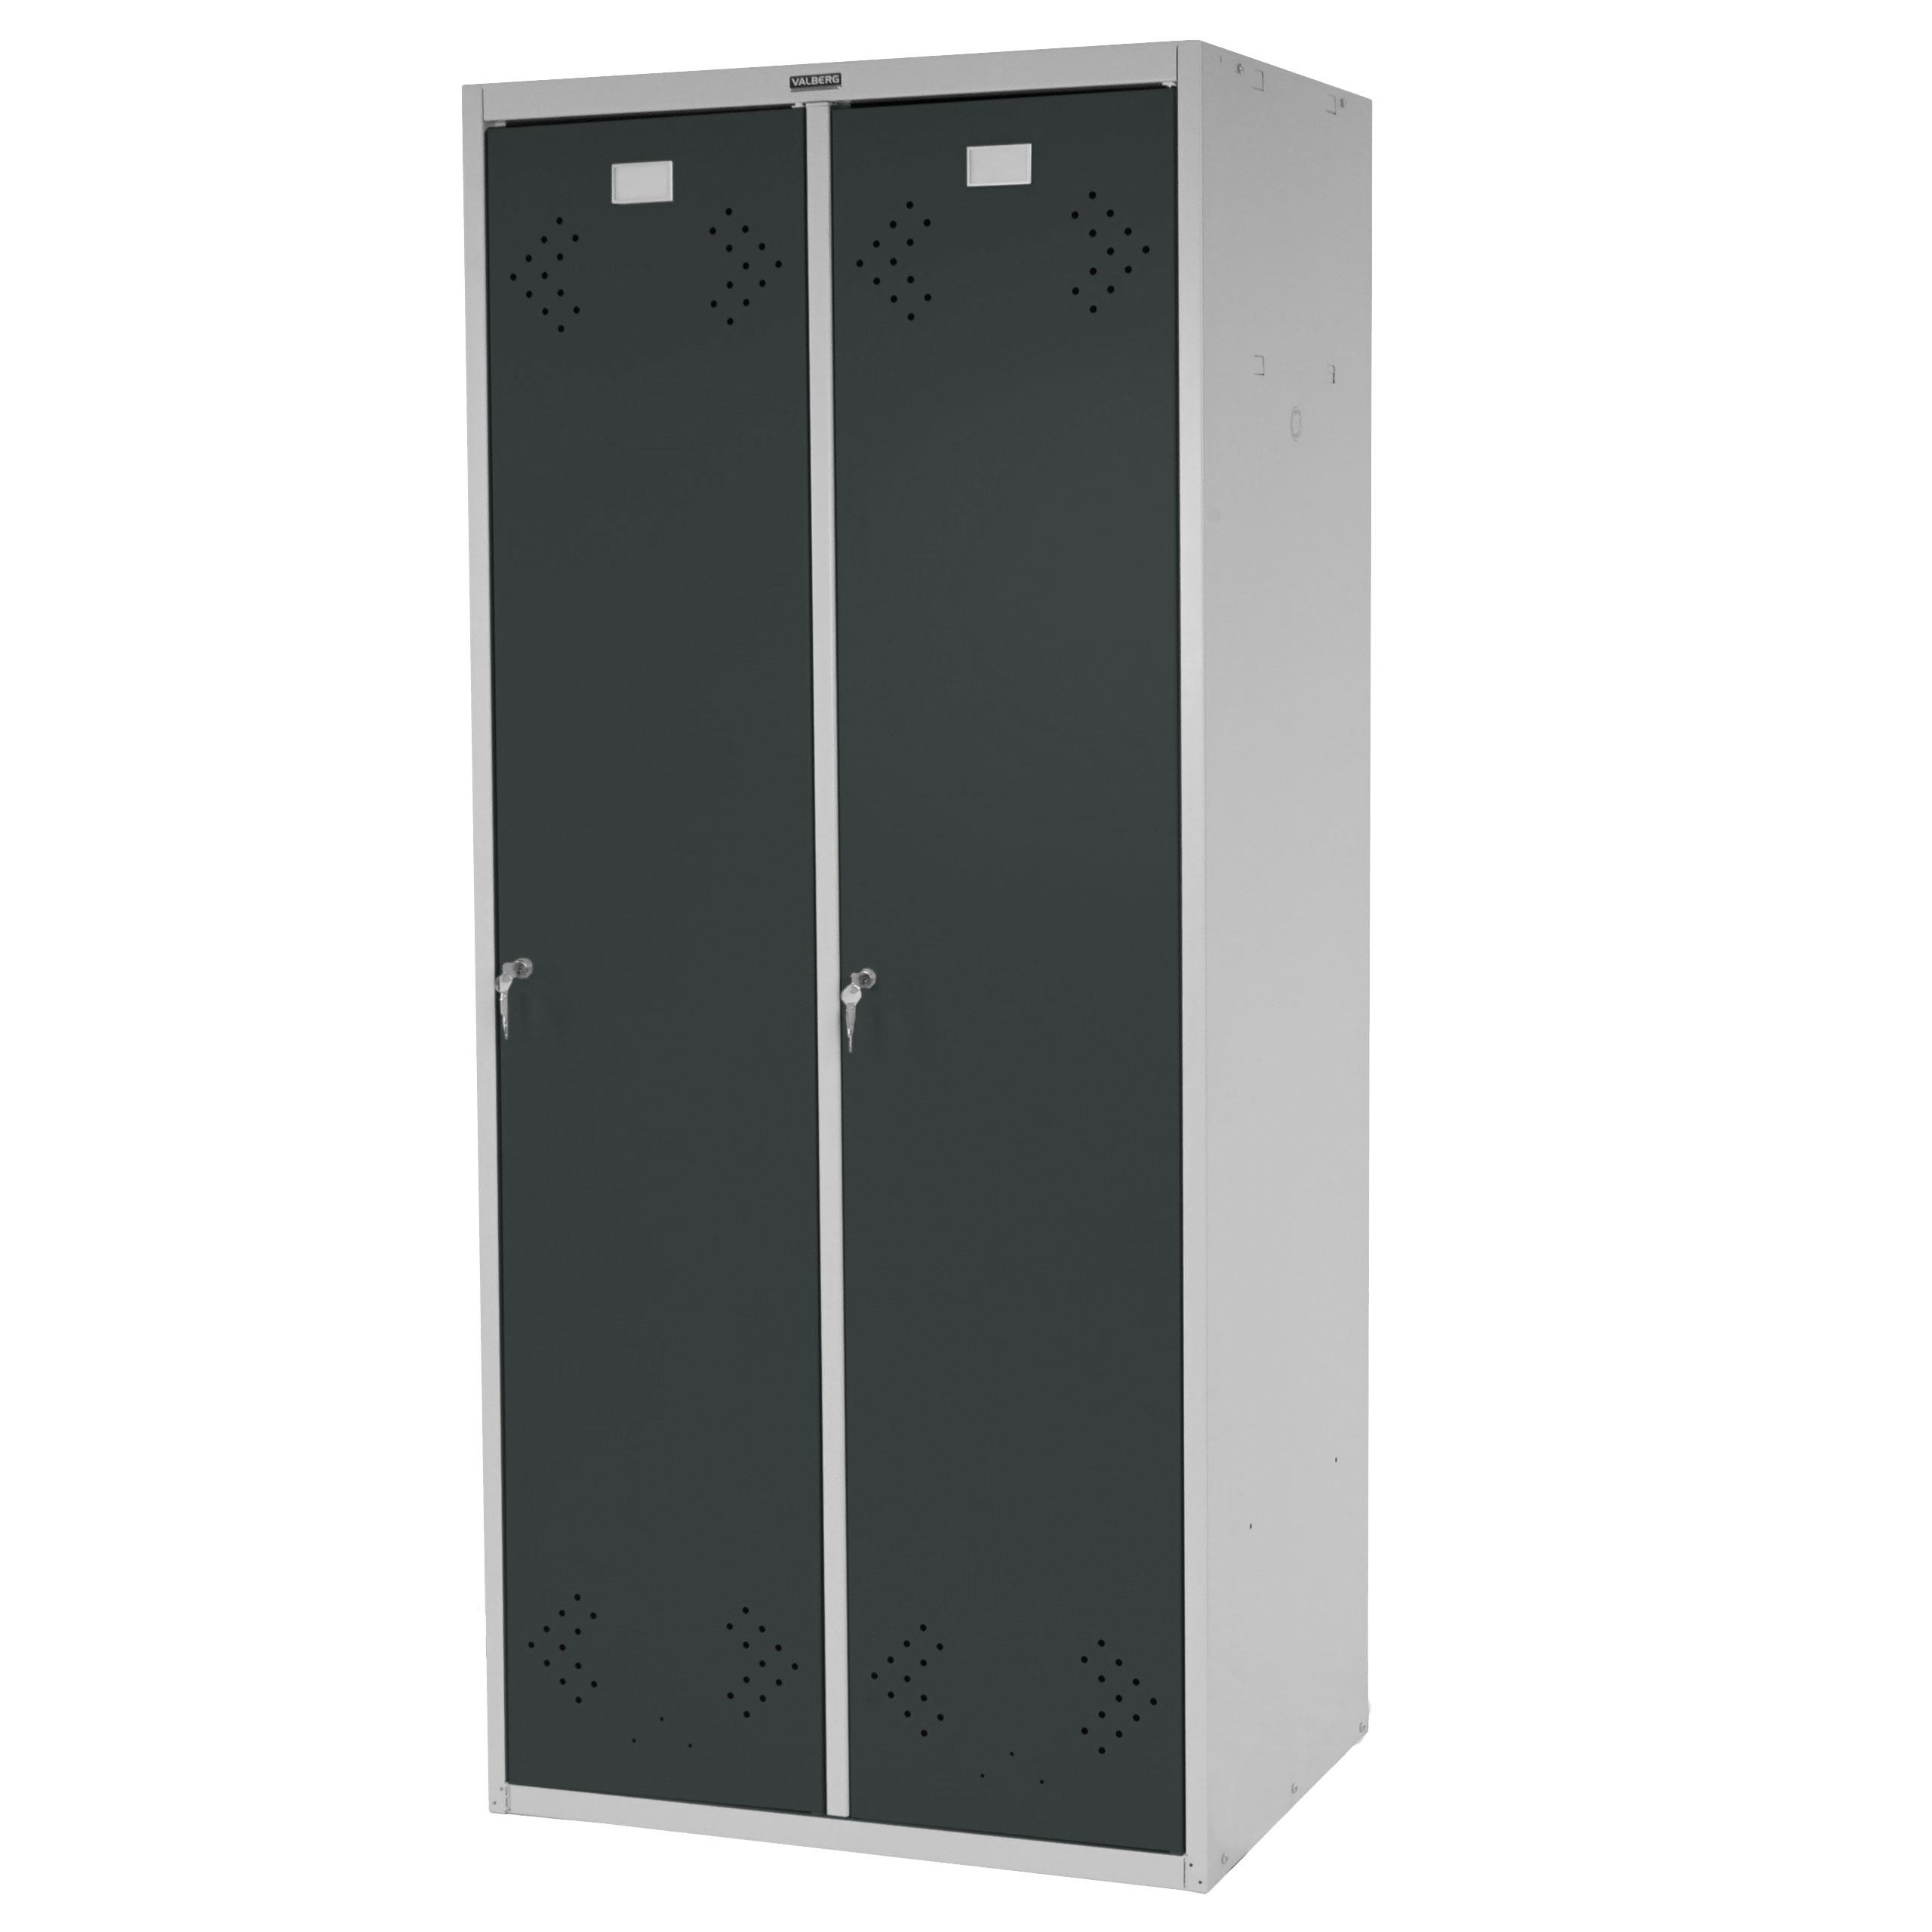 Umkleideschrank FRIDA, Kleiderspind 183x81x50 cm, 2x Tür, Robustes Stahlblech, Farbe Grau Anthrazit